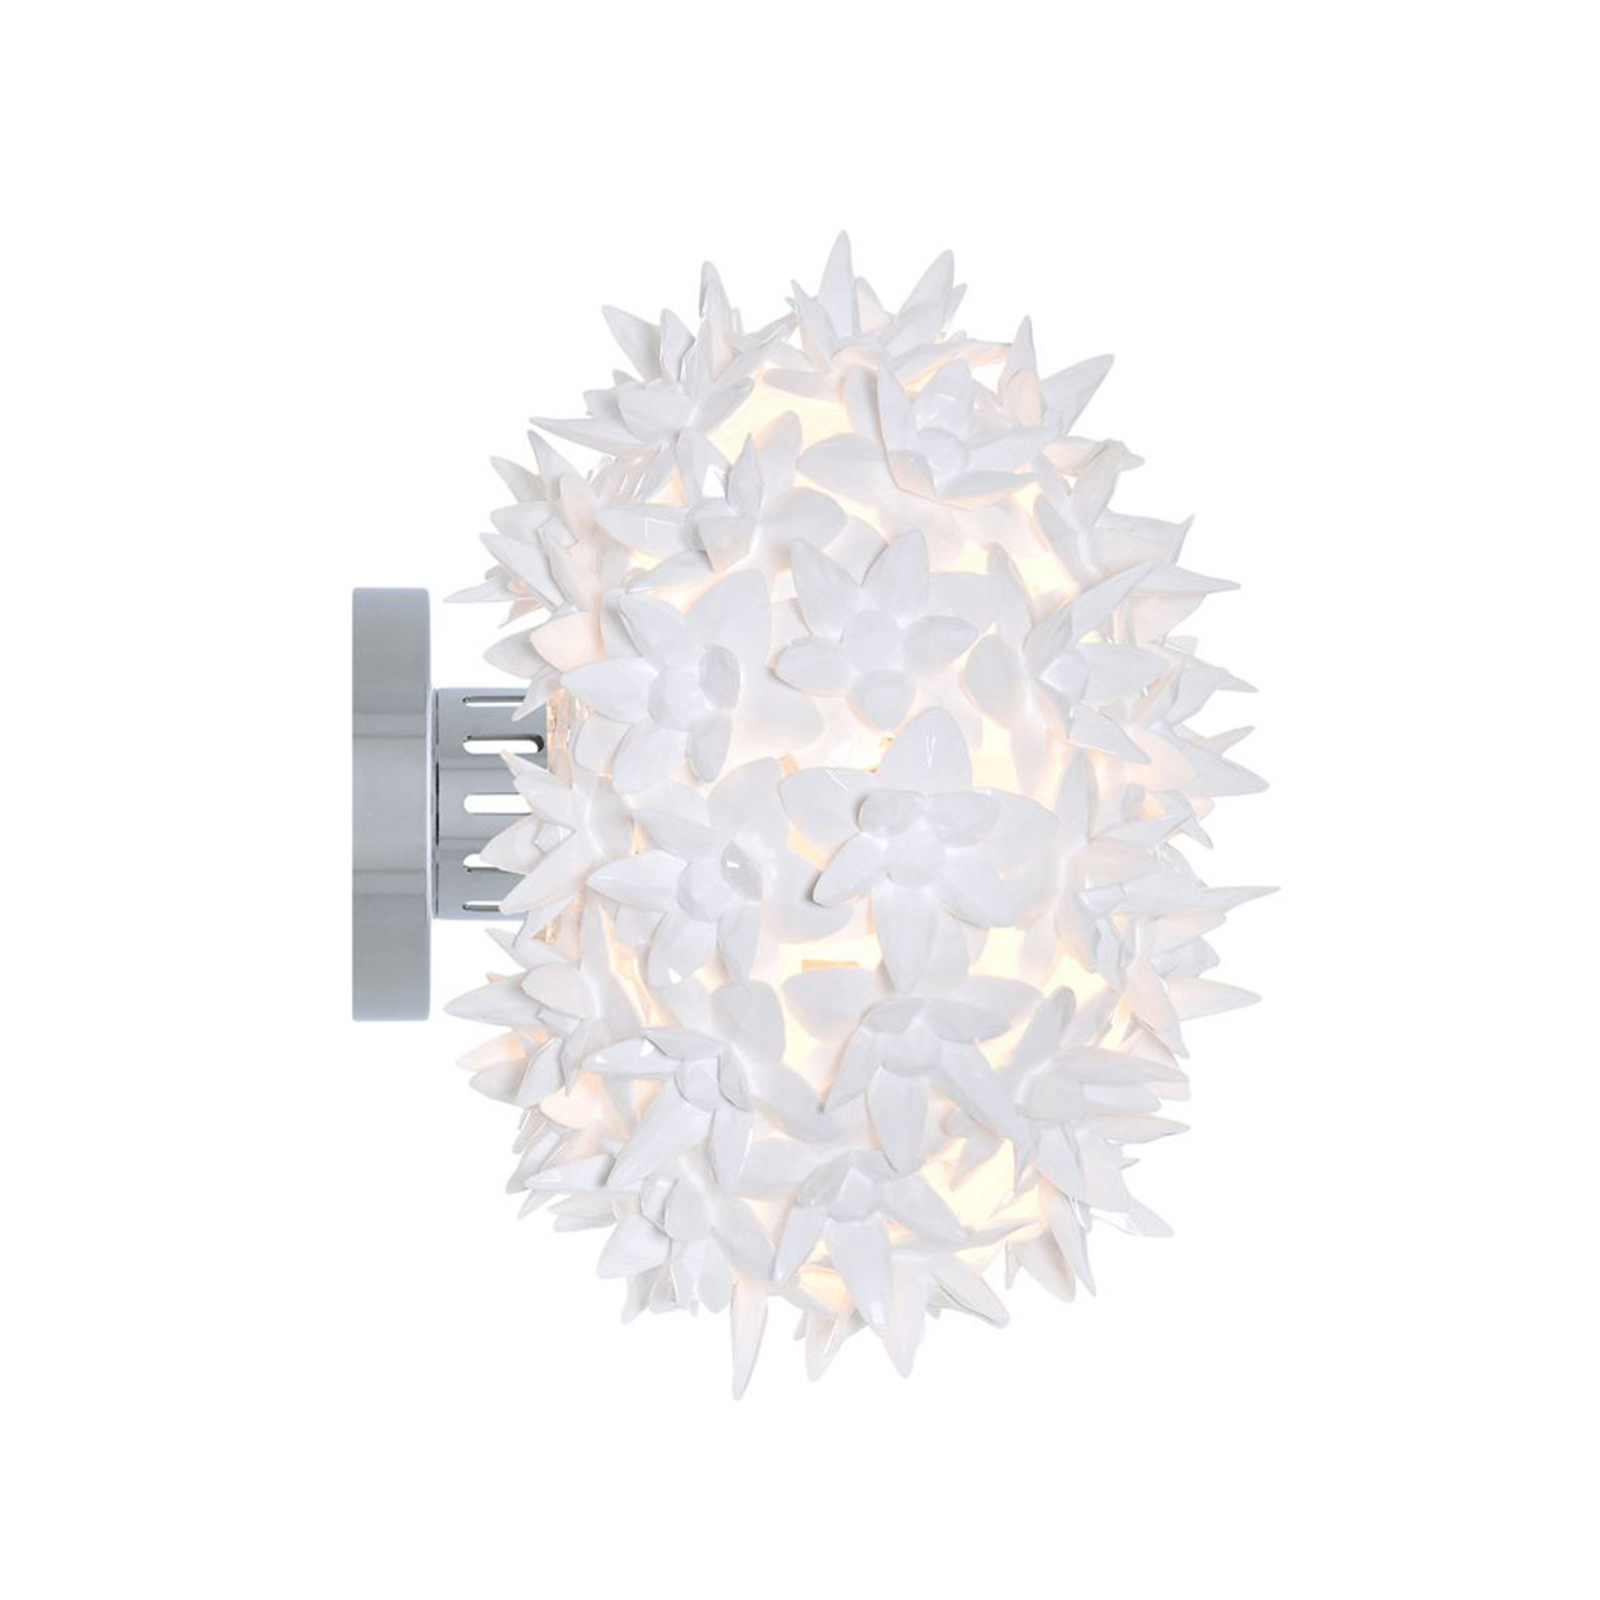 Kartell Bloom CW2 LED ceiling light G9, white